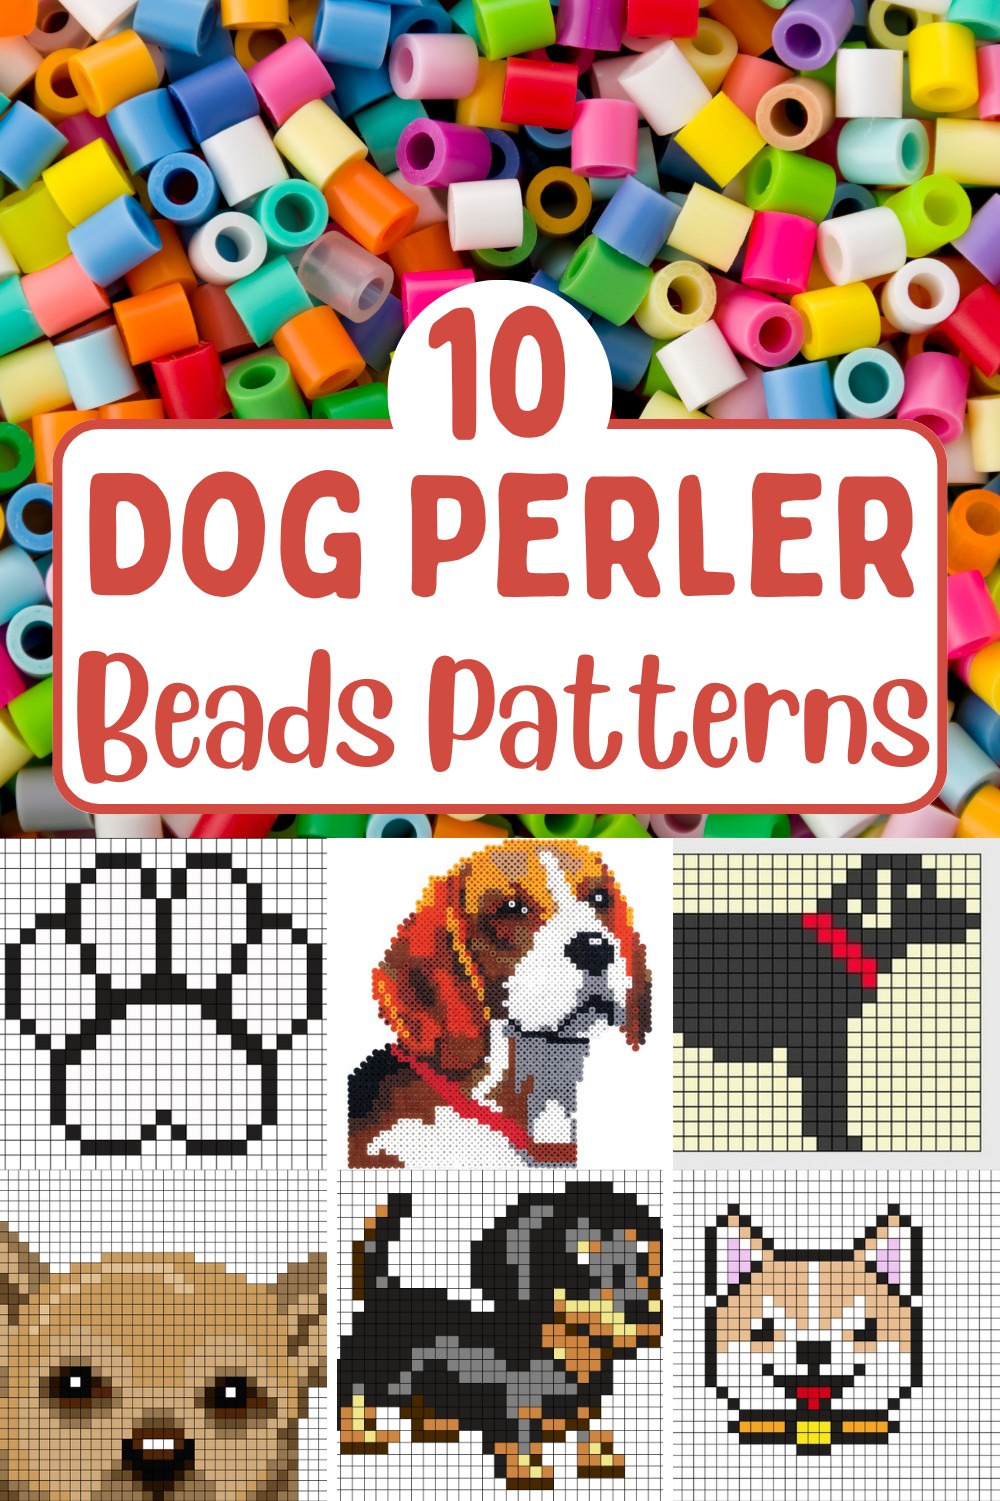 10 Dog Perler Beads Patterns Free